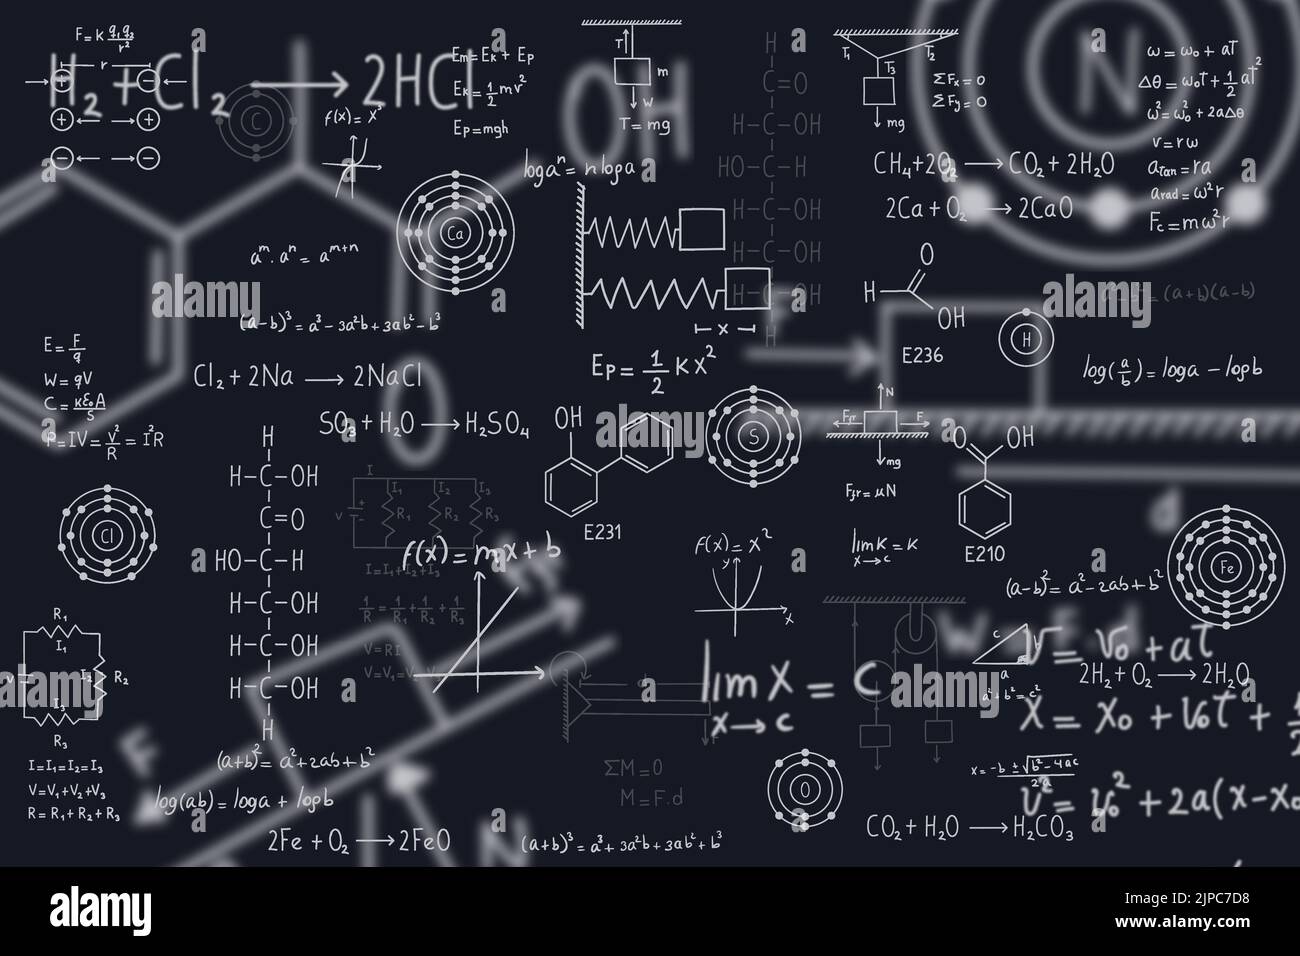 Équations de calcul, algèbre, chimie organique, réactions chimiques, éléments chimiques, physique, mouvement rectiligne, statique, électromagnétisme, friction Illustration de Vecteur